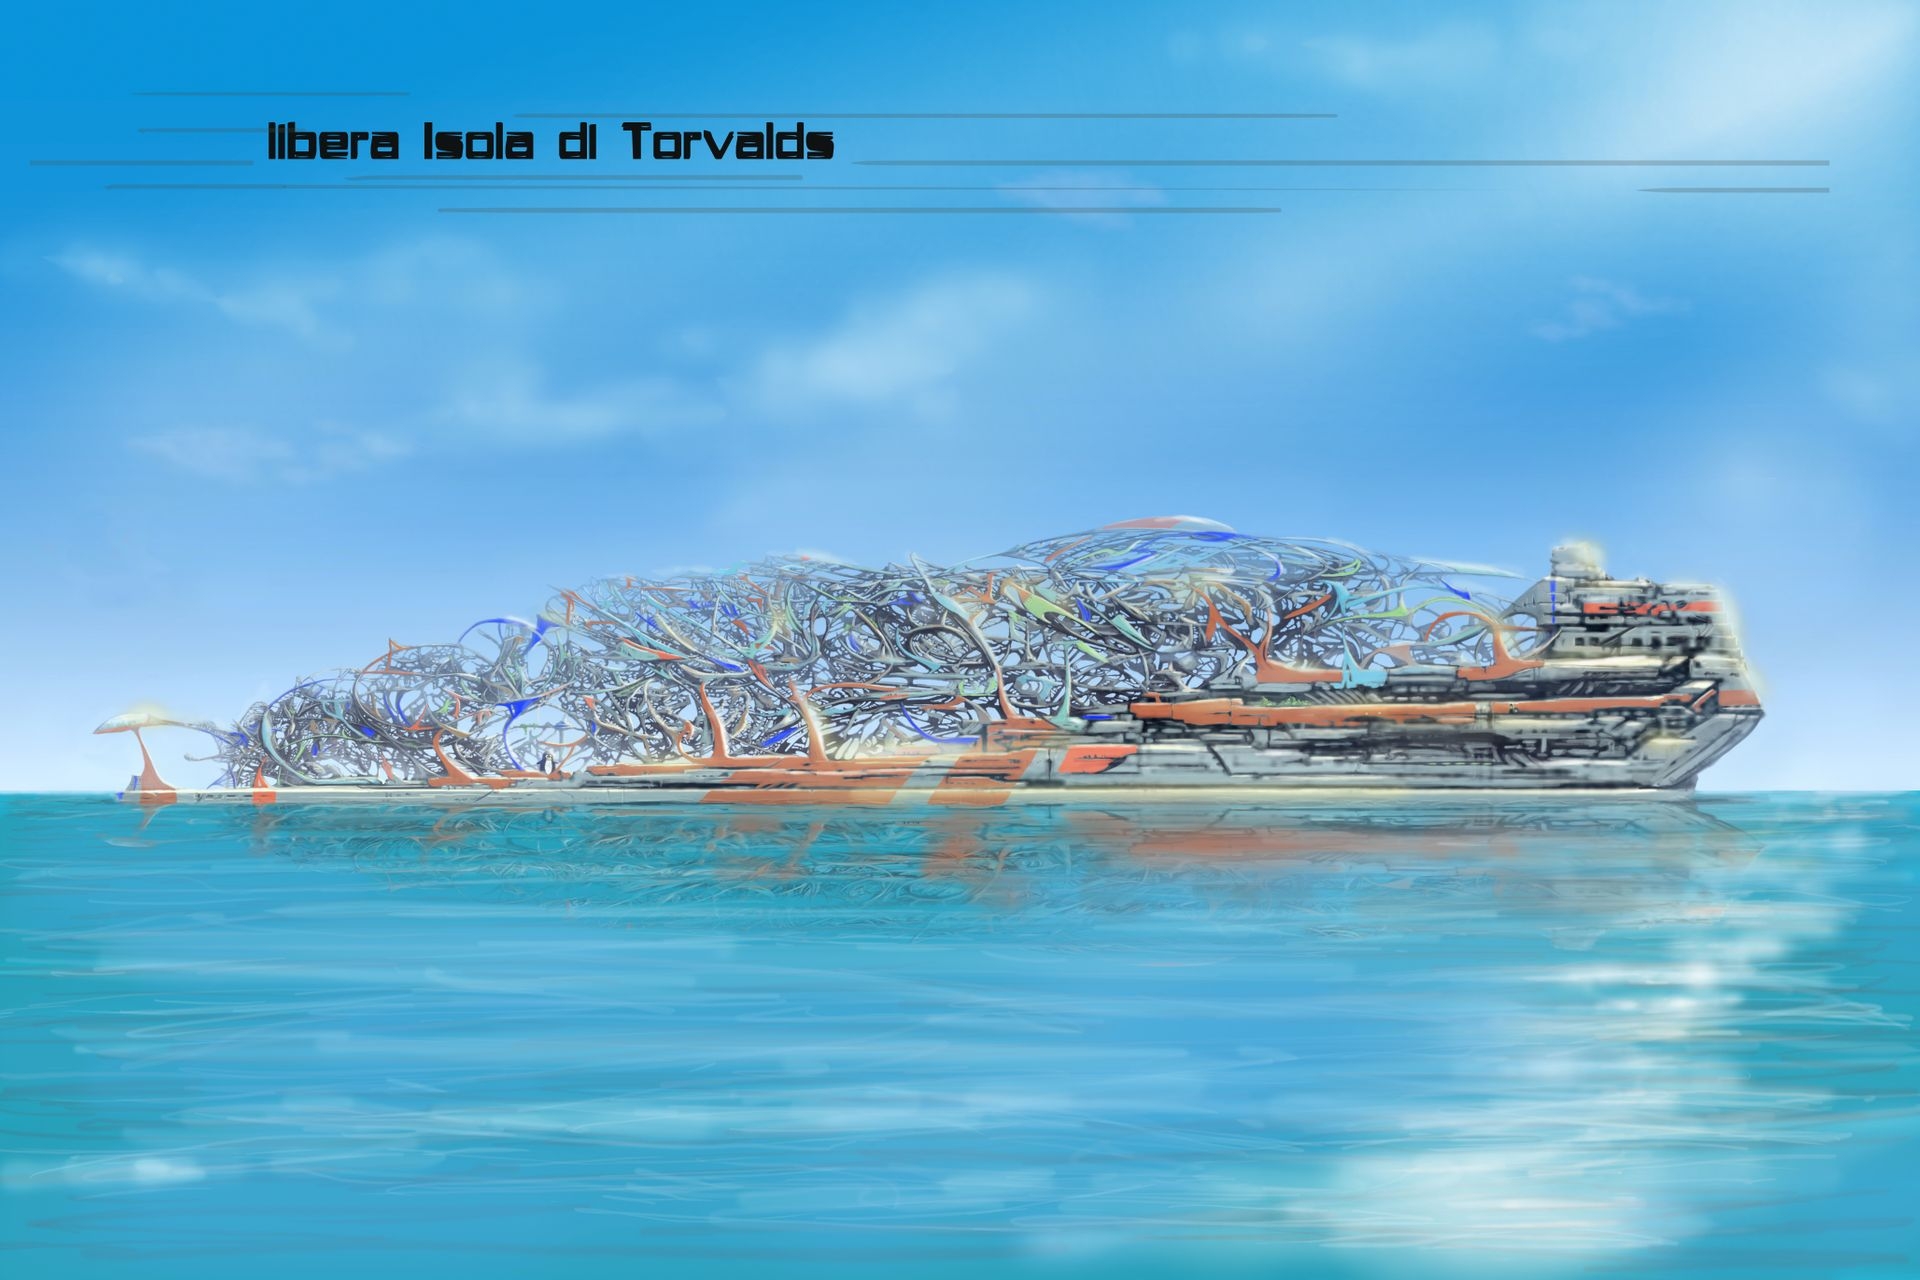 Văn học sáng tạo: một minh họa về hòn đảo Torvalds tự do trong "Dự án Montecristo - Thuộc địa đầu tiên" của Edoardo Volpi Kellermann